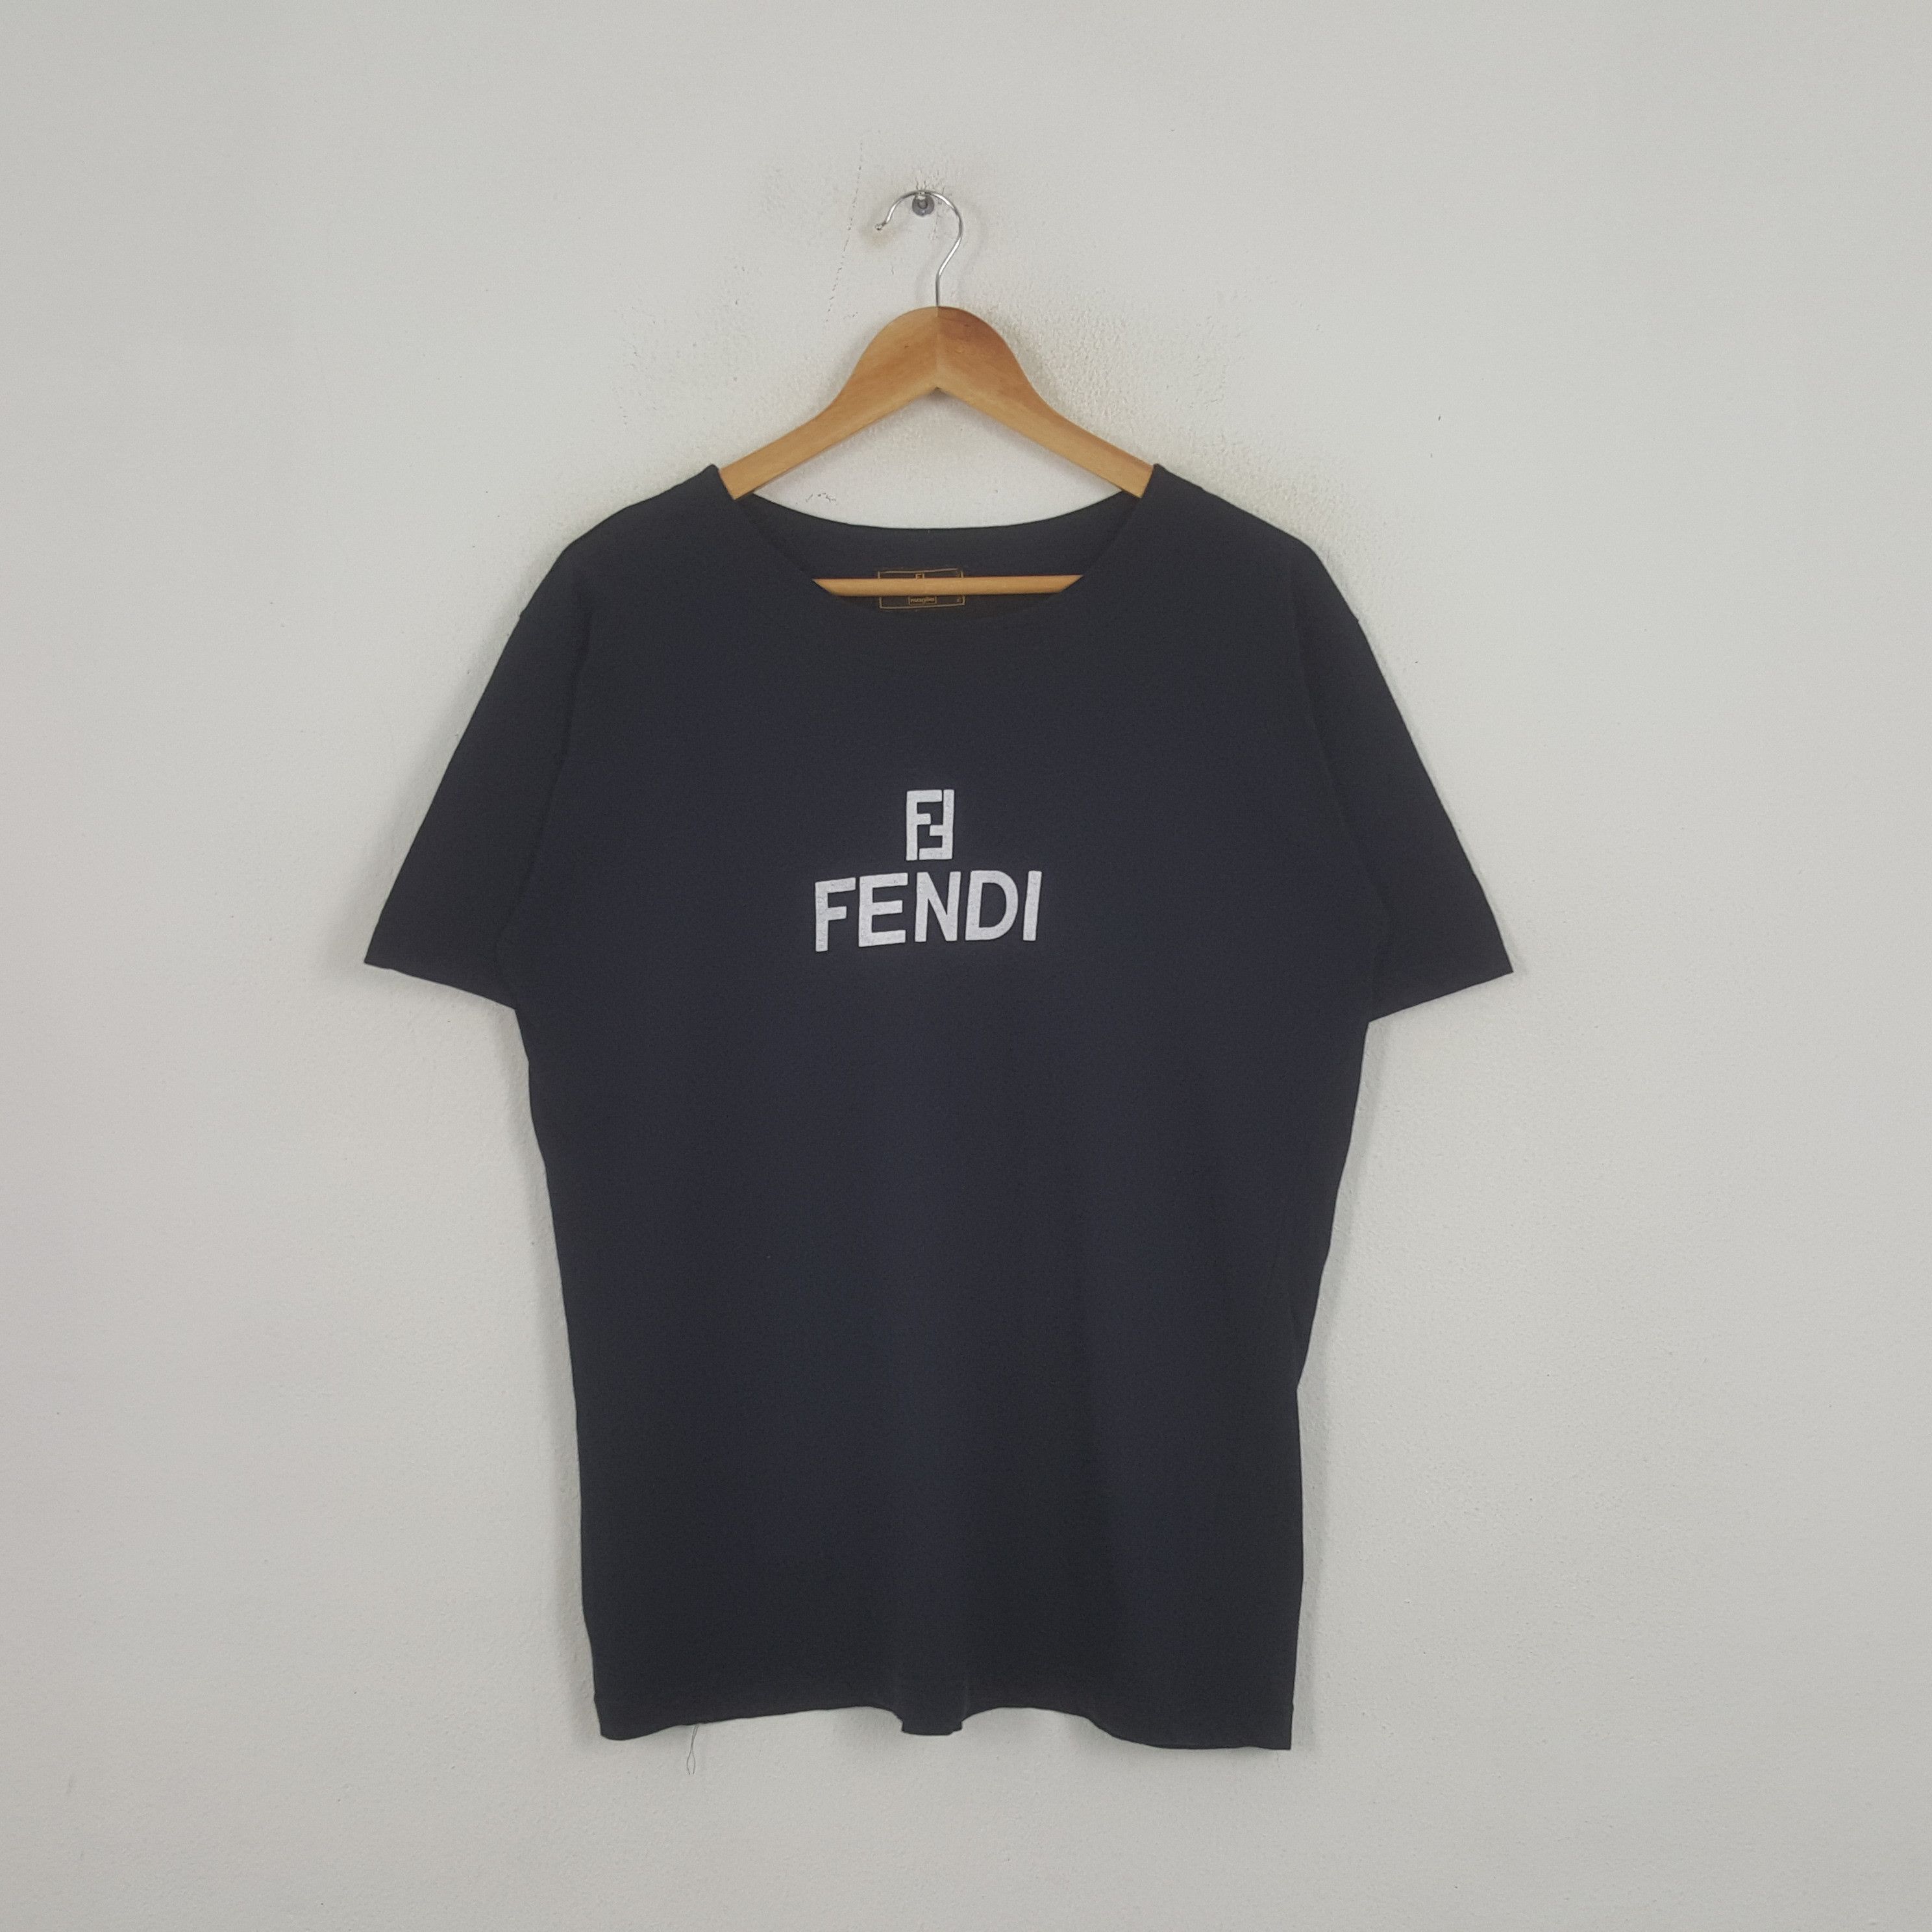 Vintage Fendi Italian Luxury Brand Tshirt